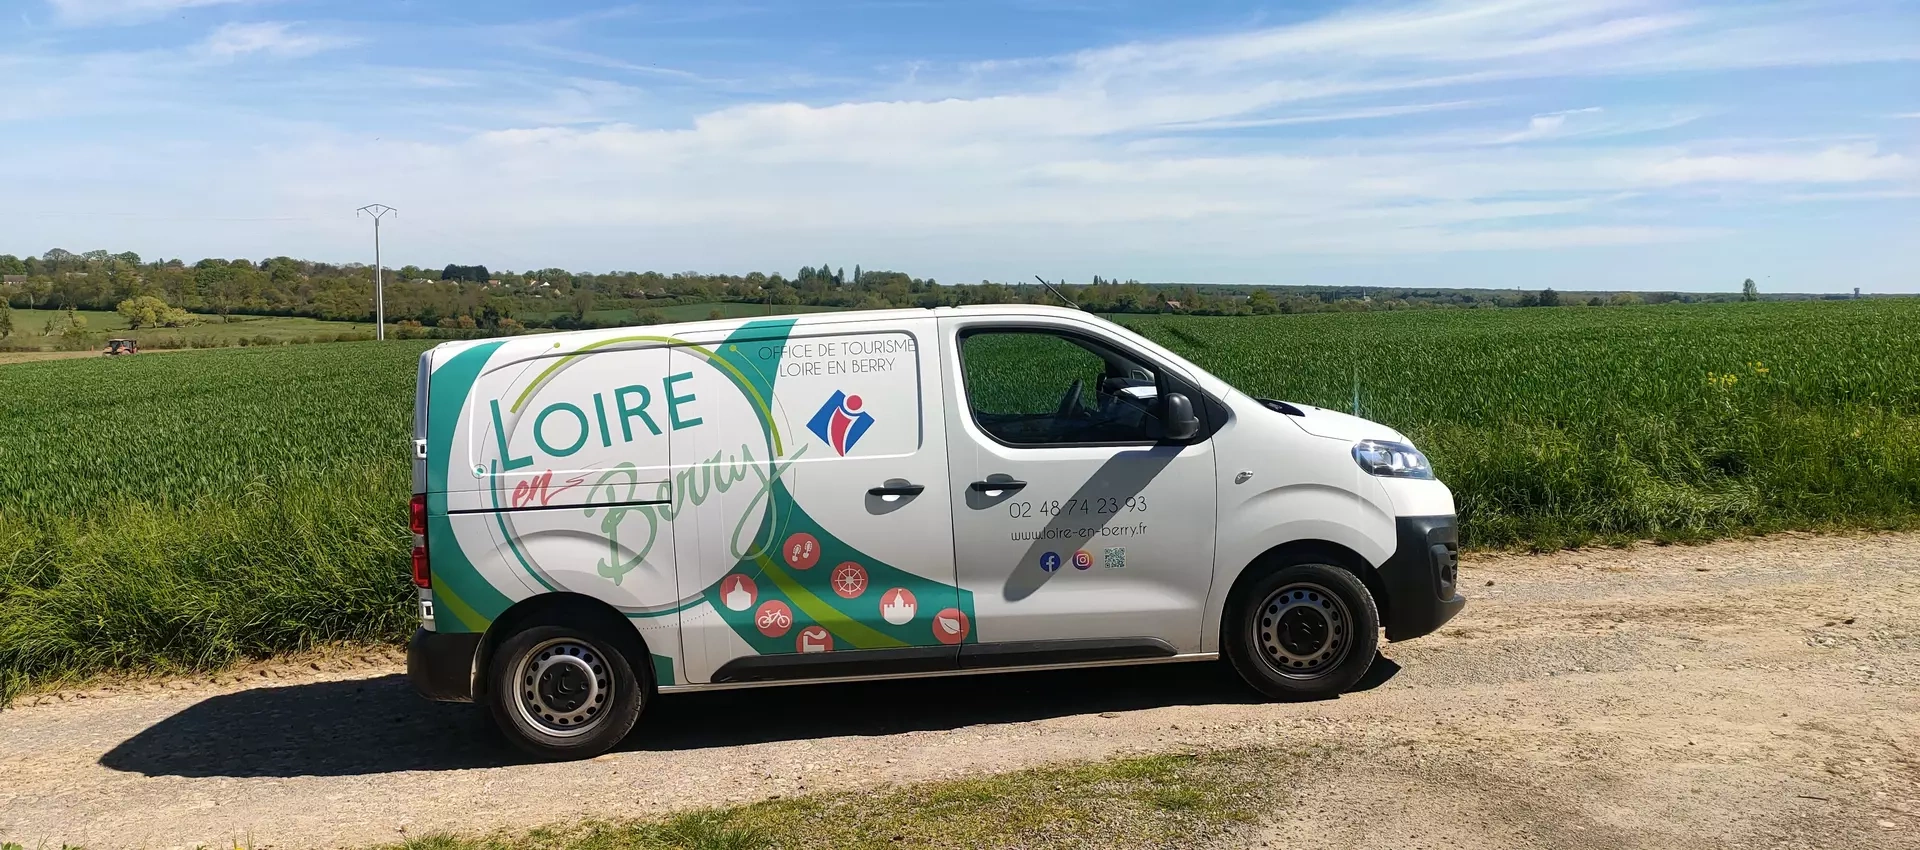 Ofice de Tourisme Loire en Berry